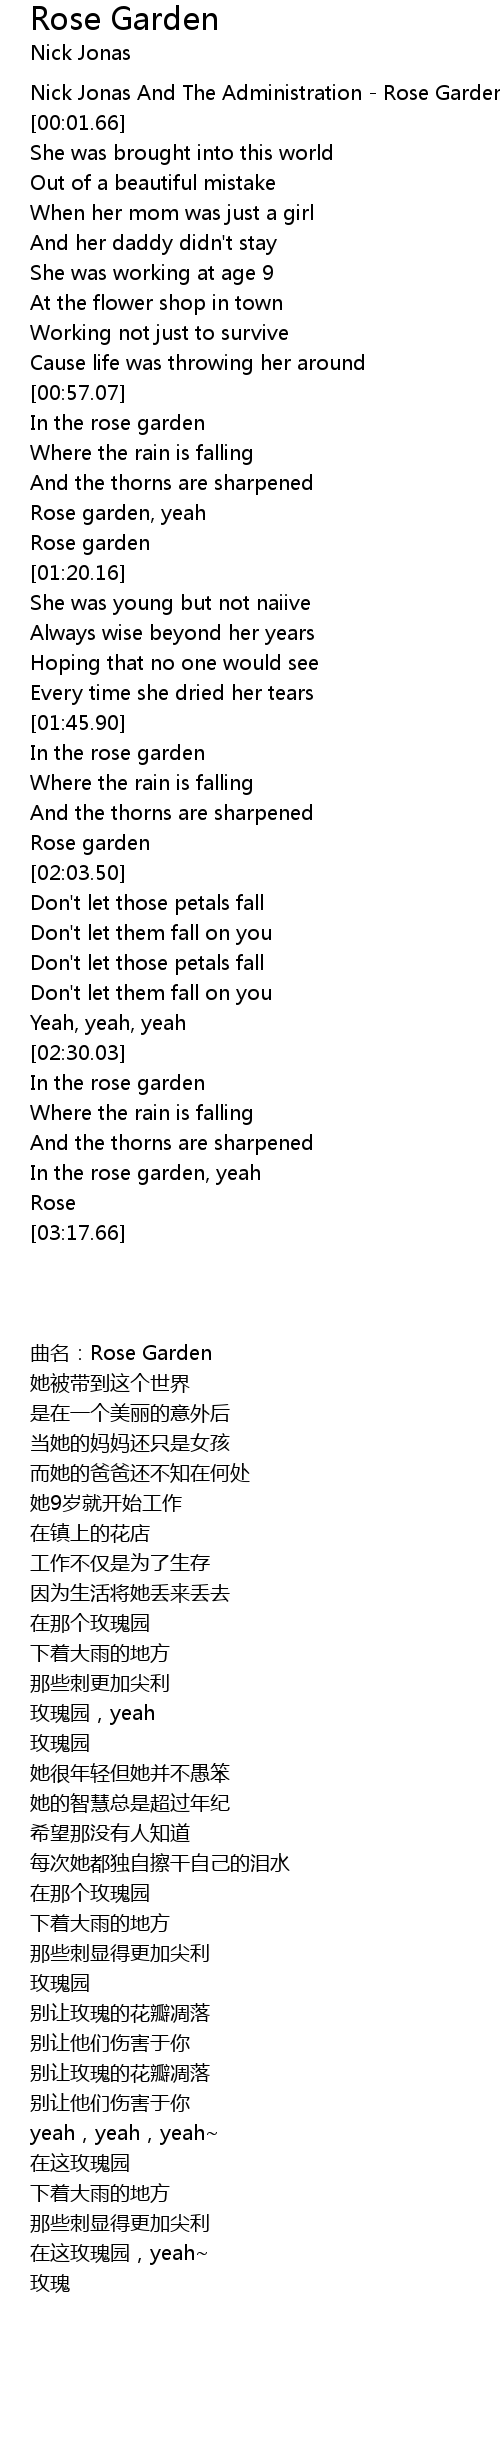 Rose Garden Lyrics Follow Lyrics